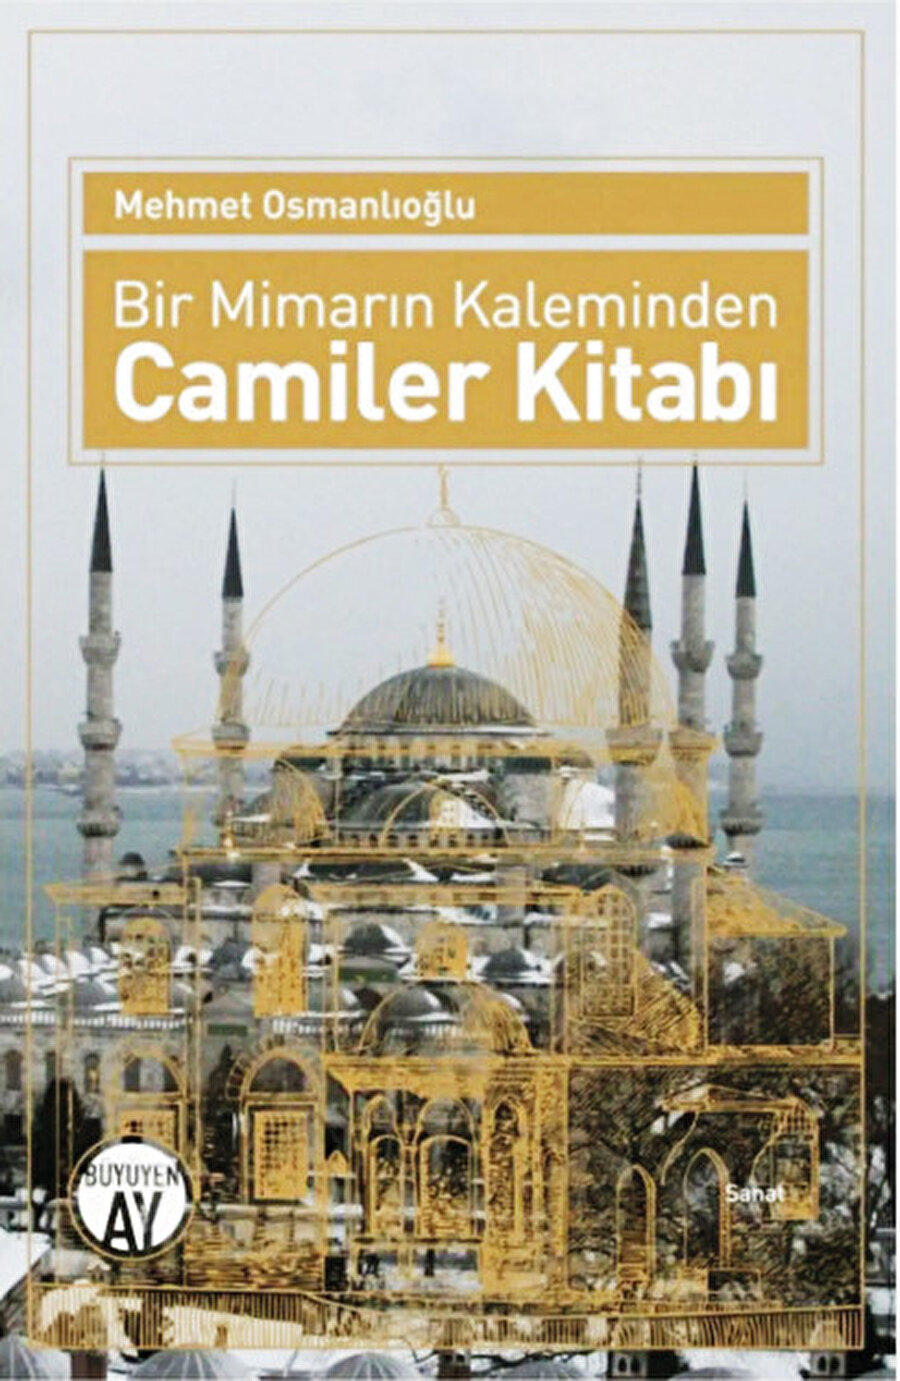 Mehmet Osmanlıoğlu, Bir Mimarın Kaleminden Camiler Kitabı